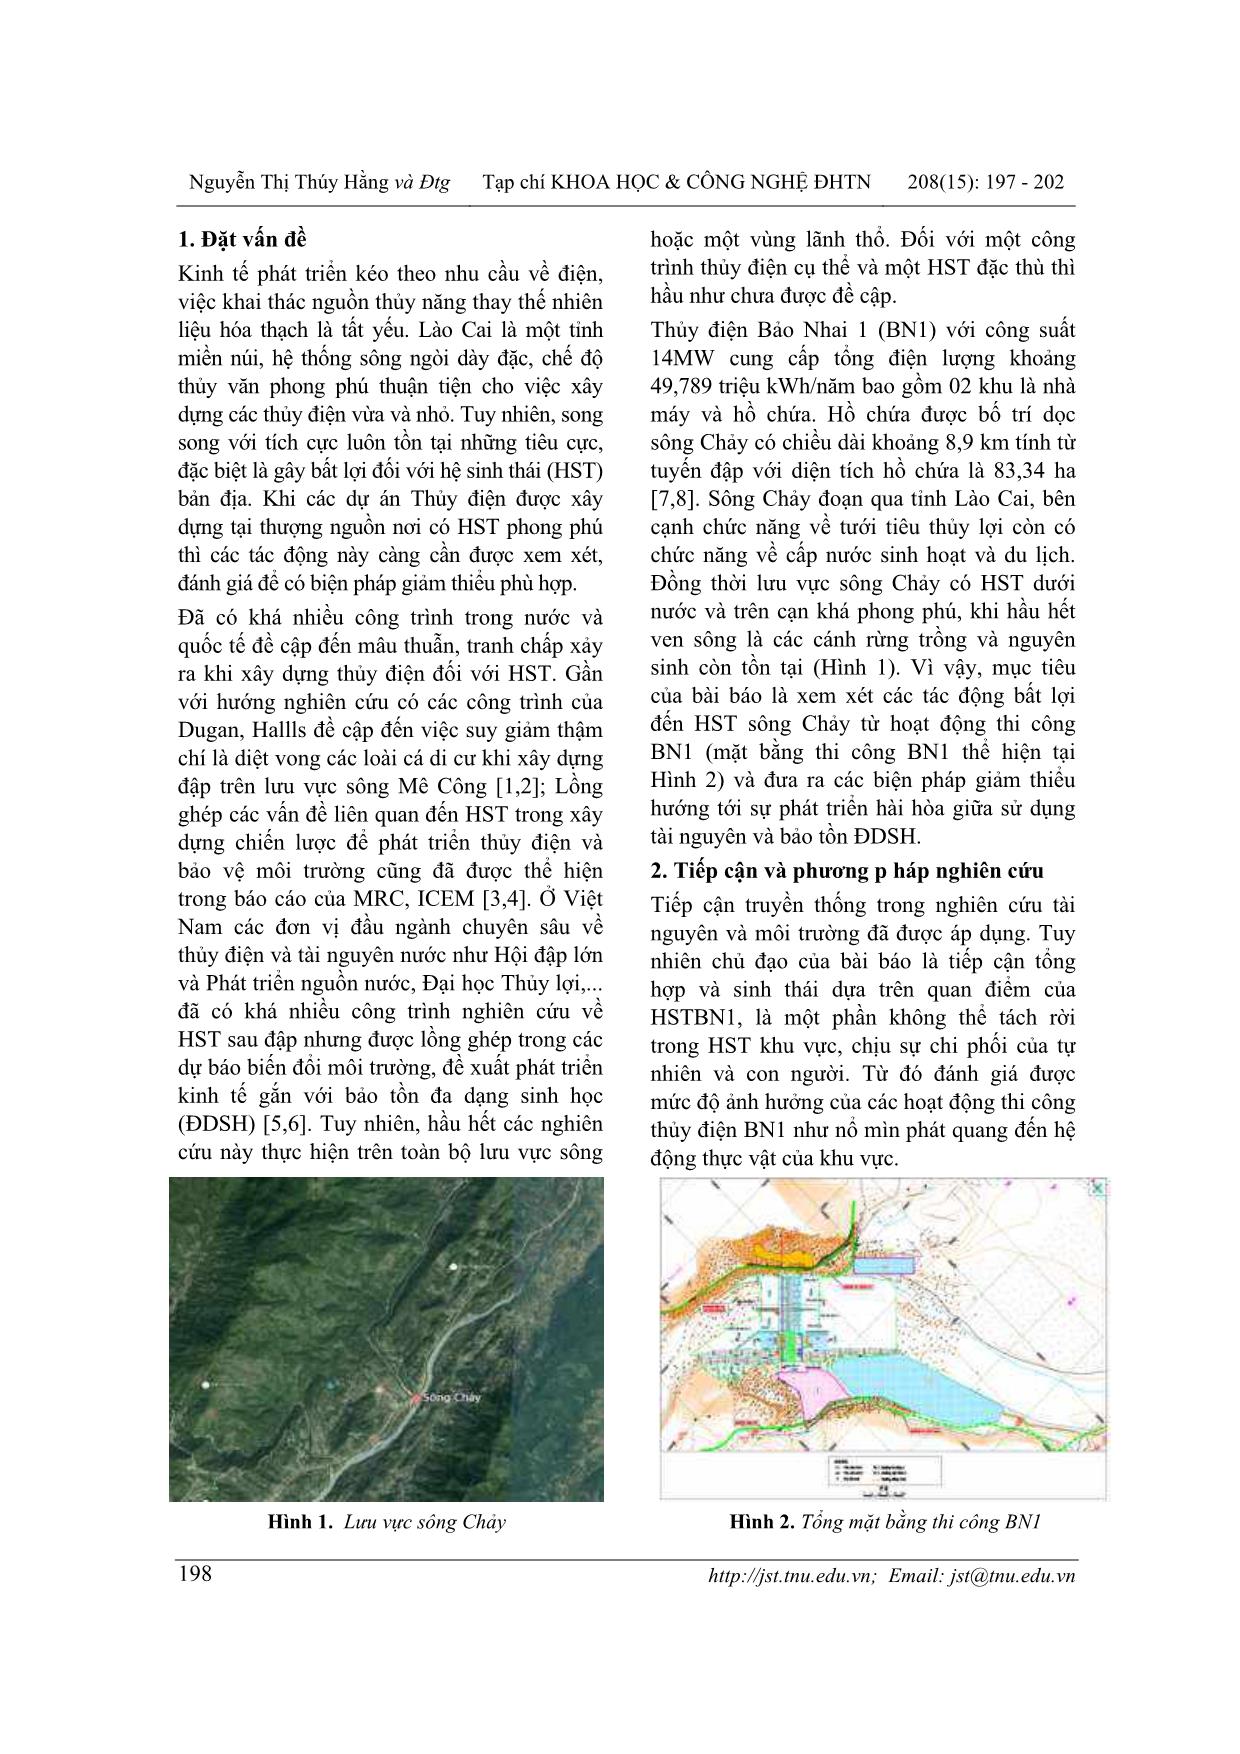 Xem xét các tác động bất lợi đến hệ sinh thái khu vực sông chảy khi xây dựng thủy điện Bảo Nhai I trang 2